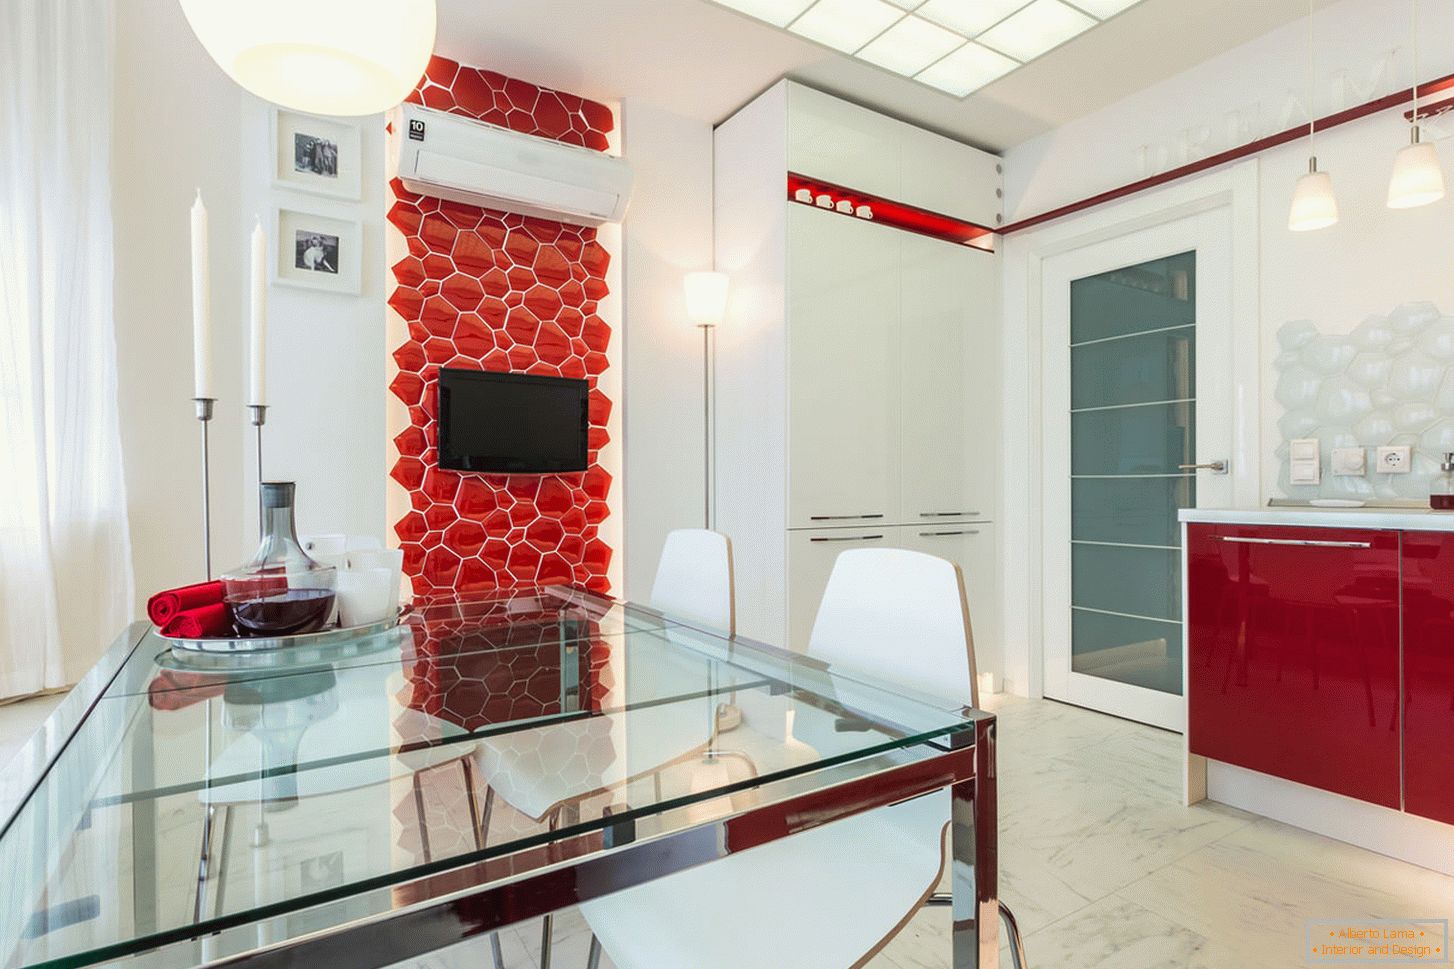 Schicke Innenküche in weißen und roten Farben